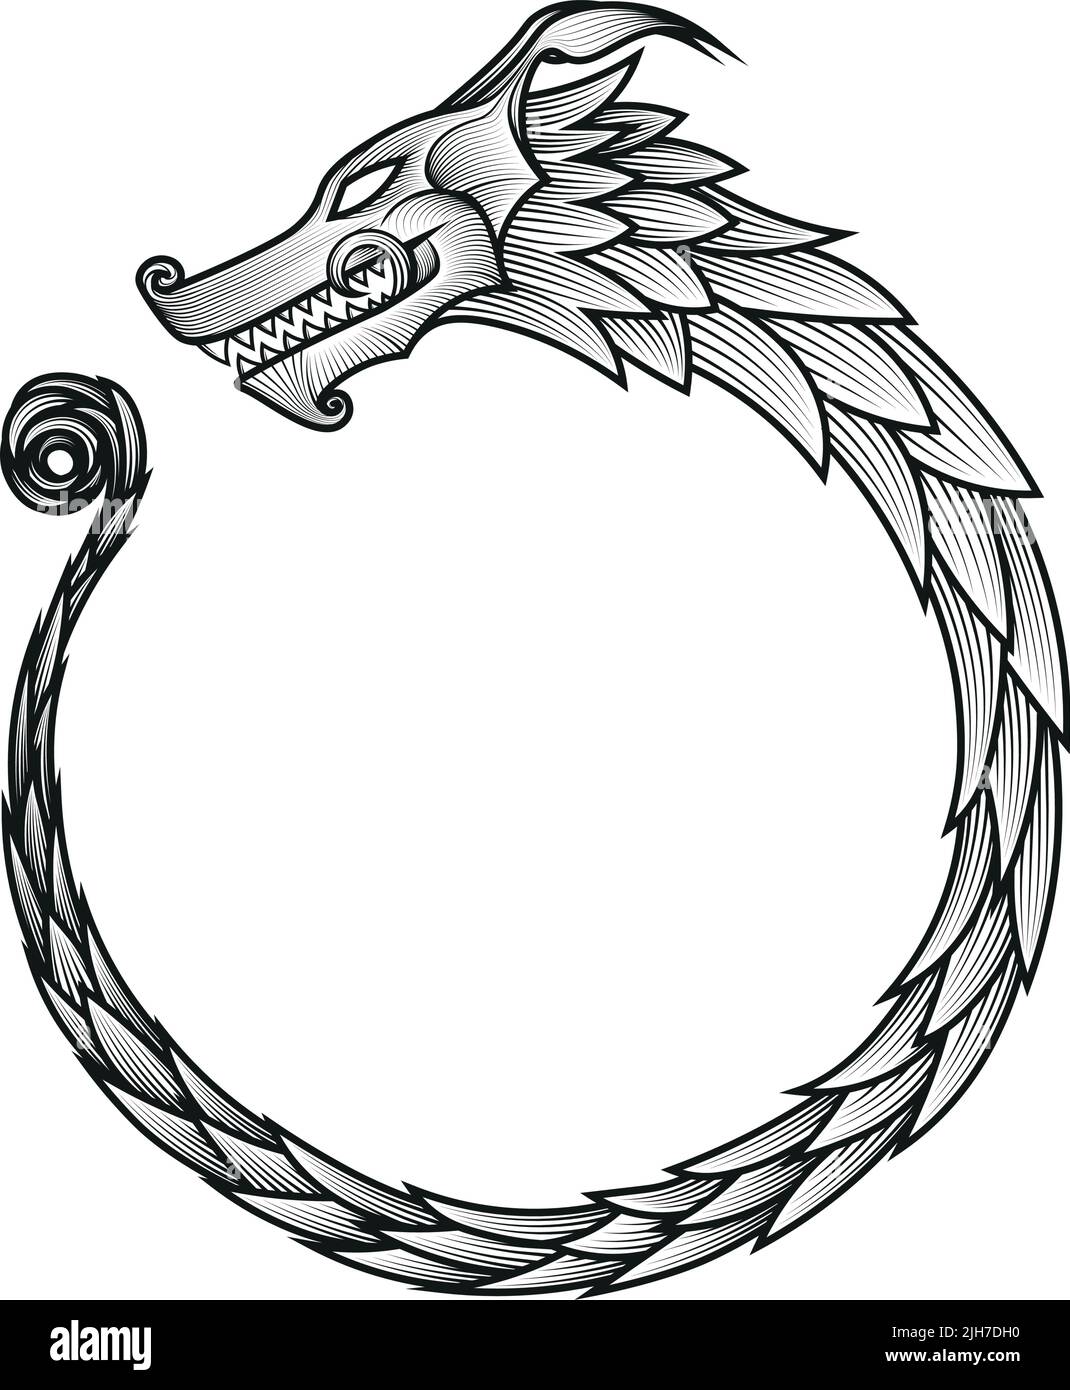 Simbolo dell'Infinity di Ouroboros - stile medievale del legno del vichingo del drago Illustrazione Vettoriale